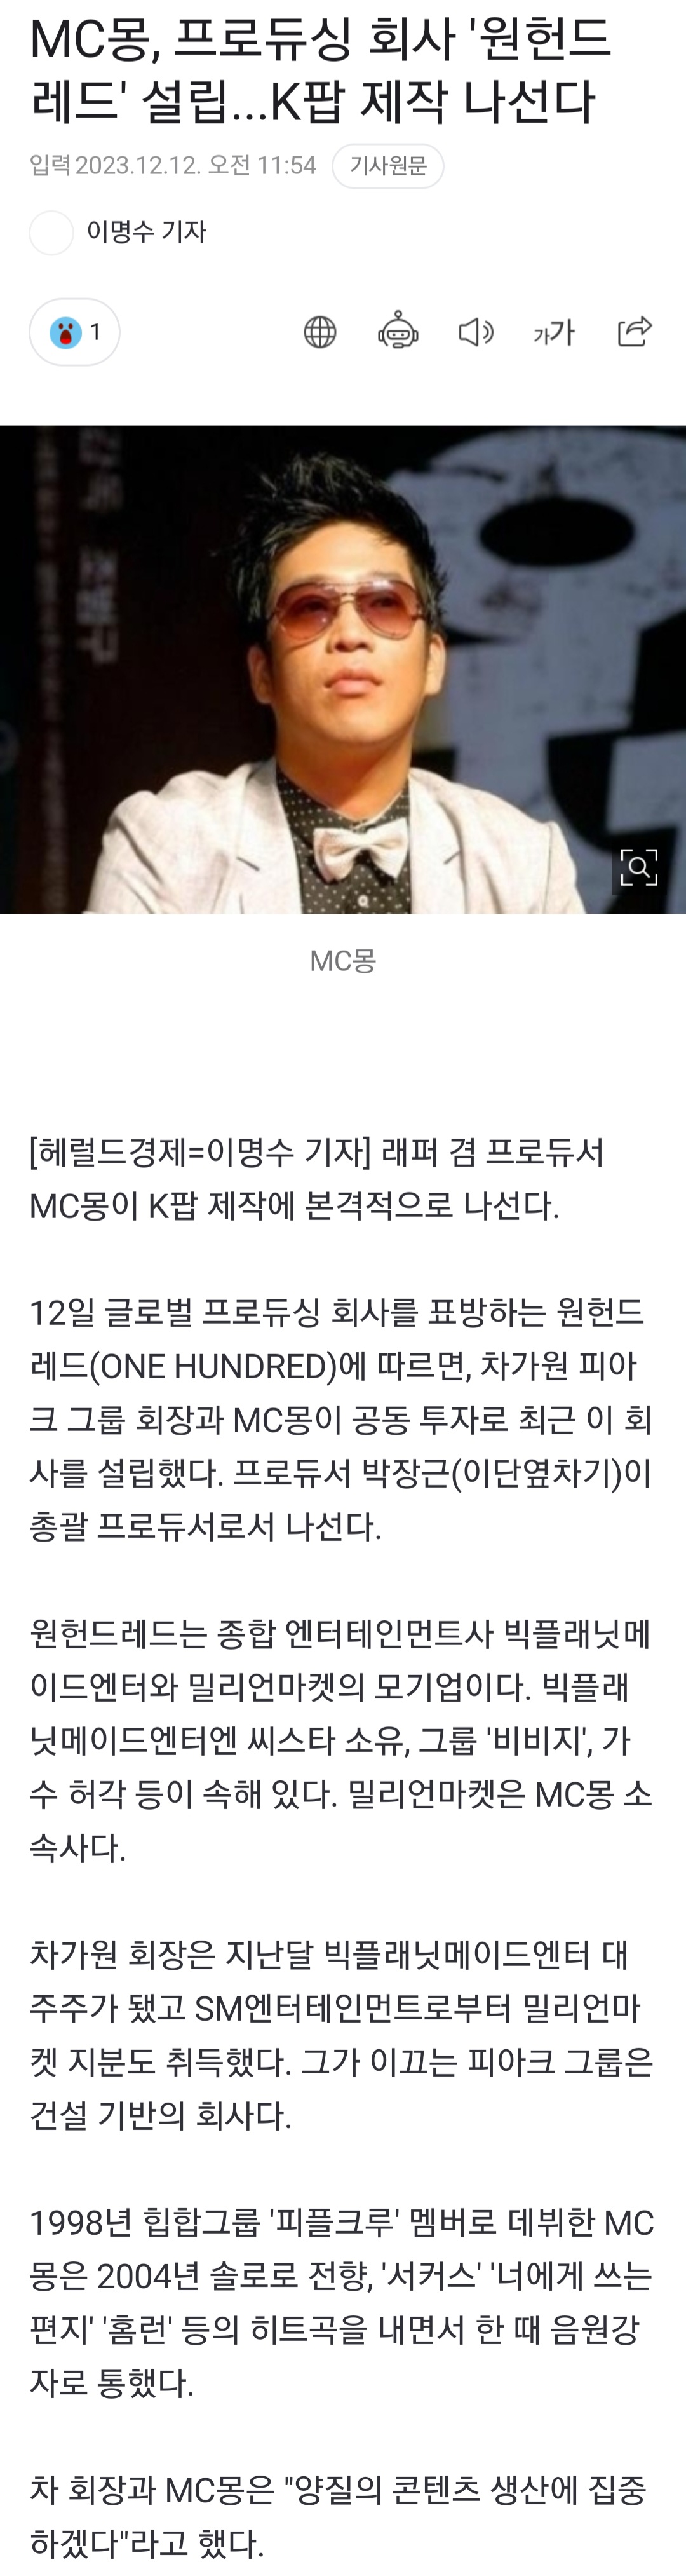 [정보/소식] MC몽, 프로듀싱 회사 '원헌드레드' 설립...K팝 제작 나선다 | 인스티즈